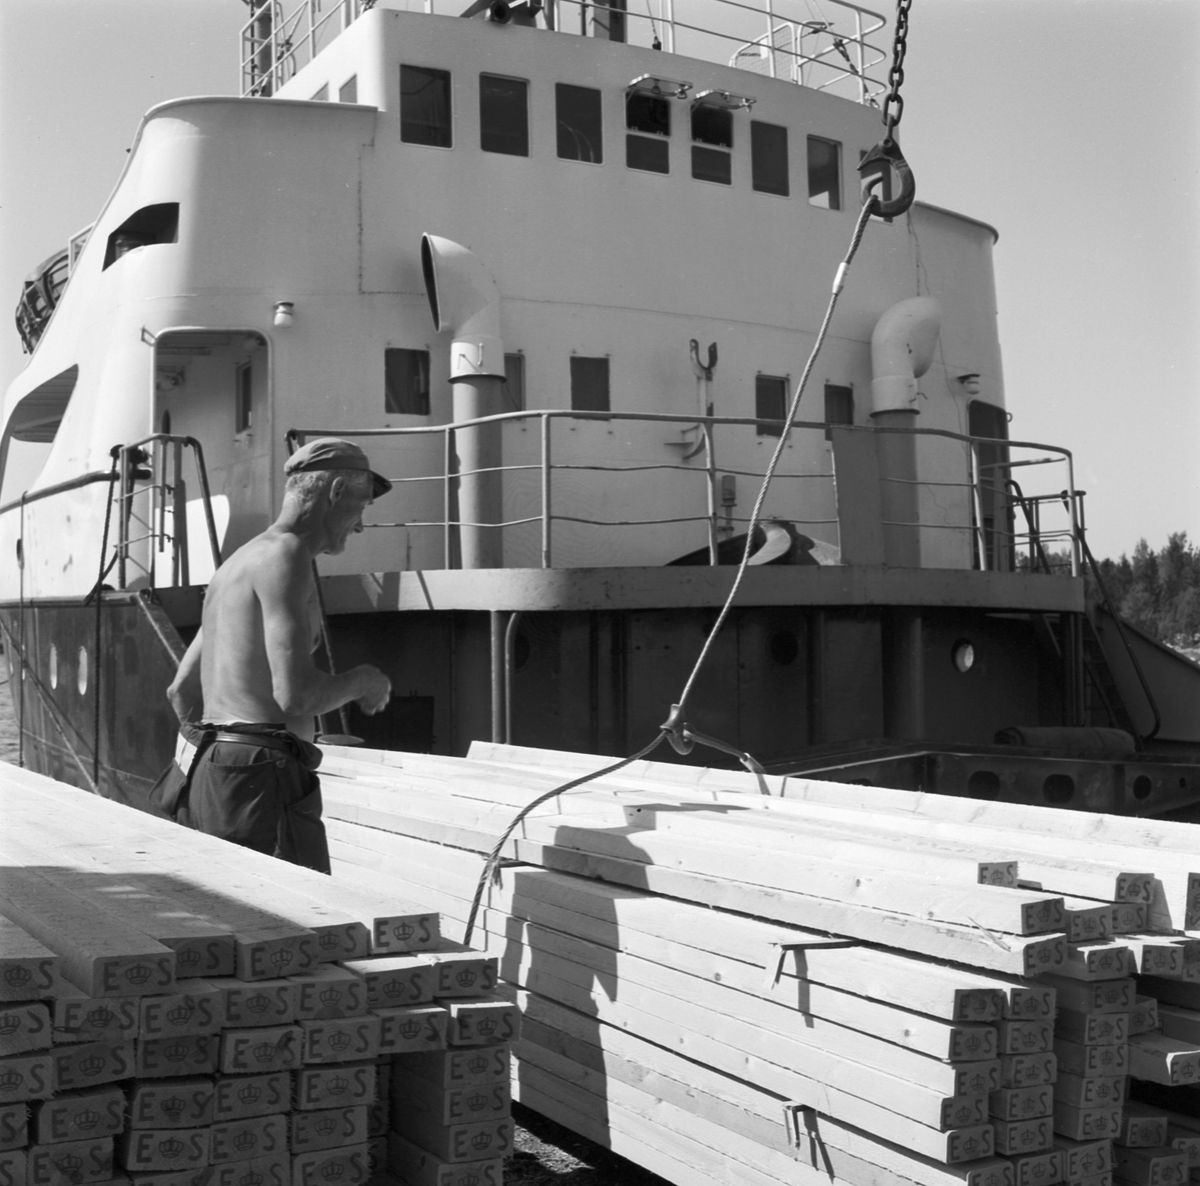 Livligt i Fagervikens hamn, Uppland 1969